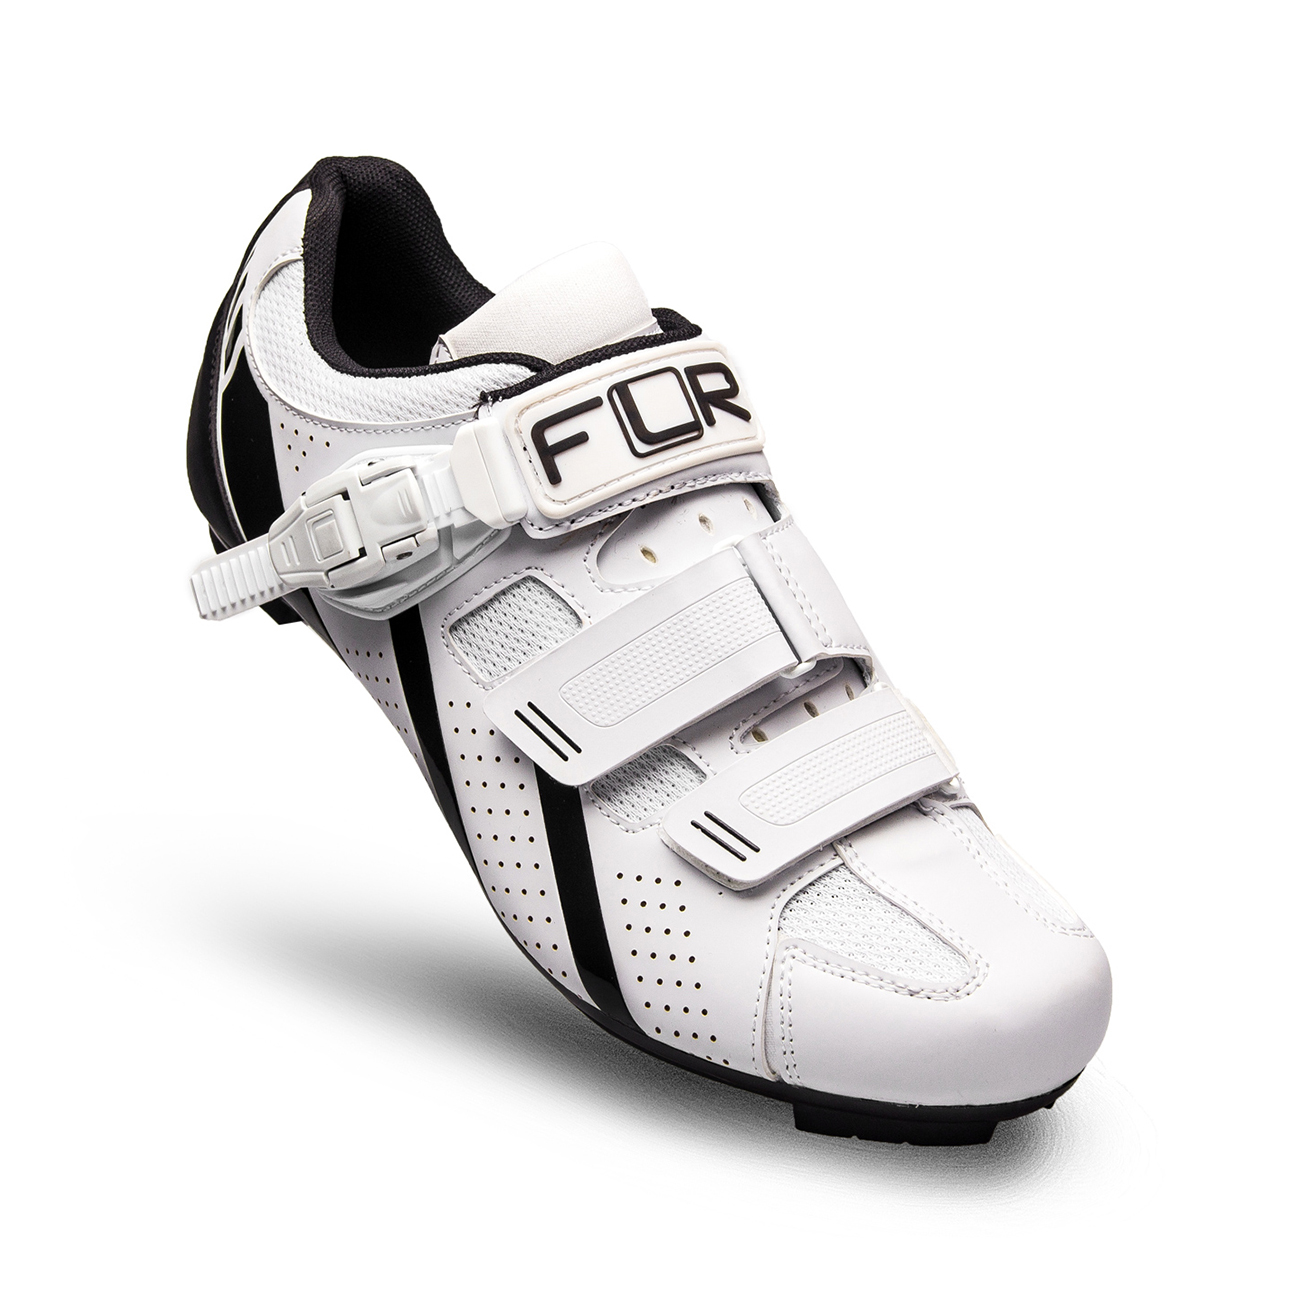 
                FLR Cyklistické tretry - F15 - čierna/biela 48
            